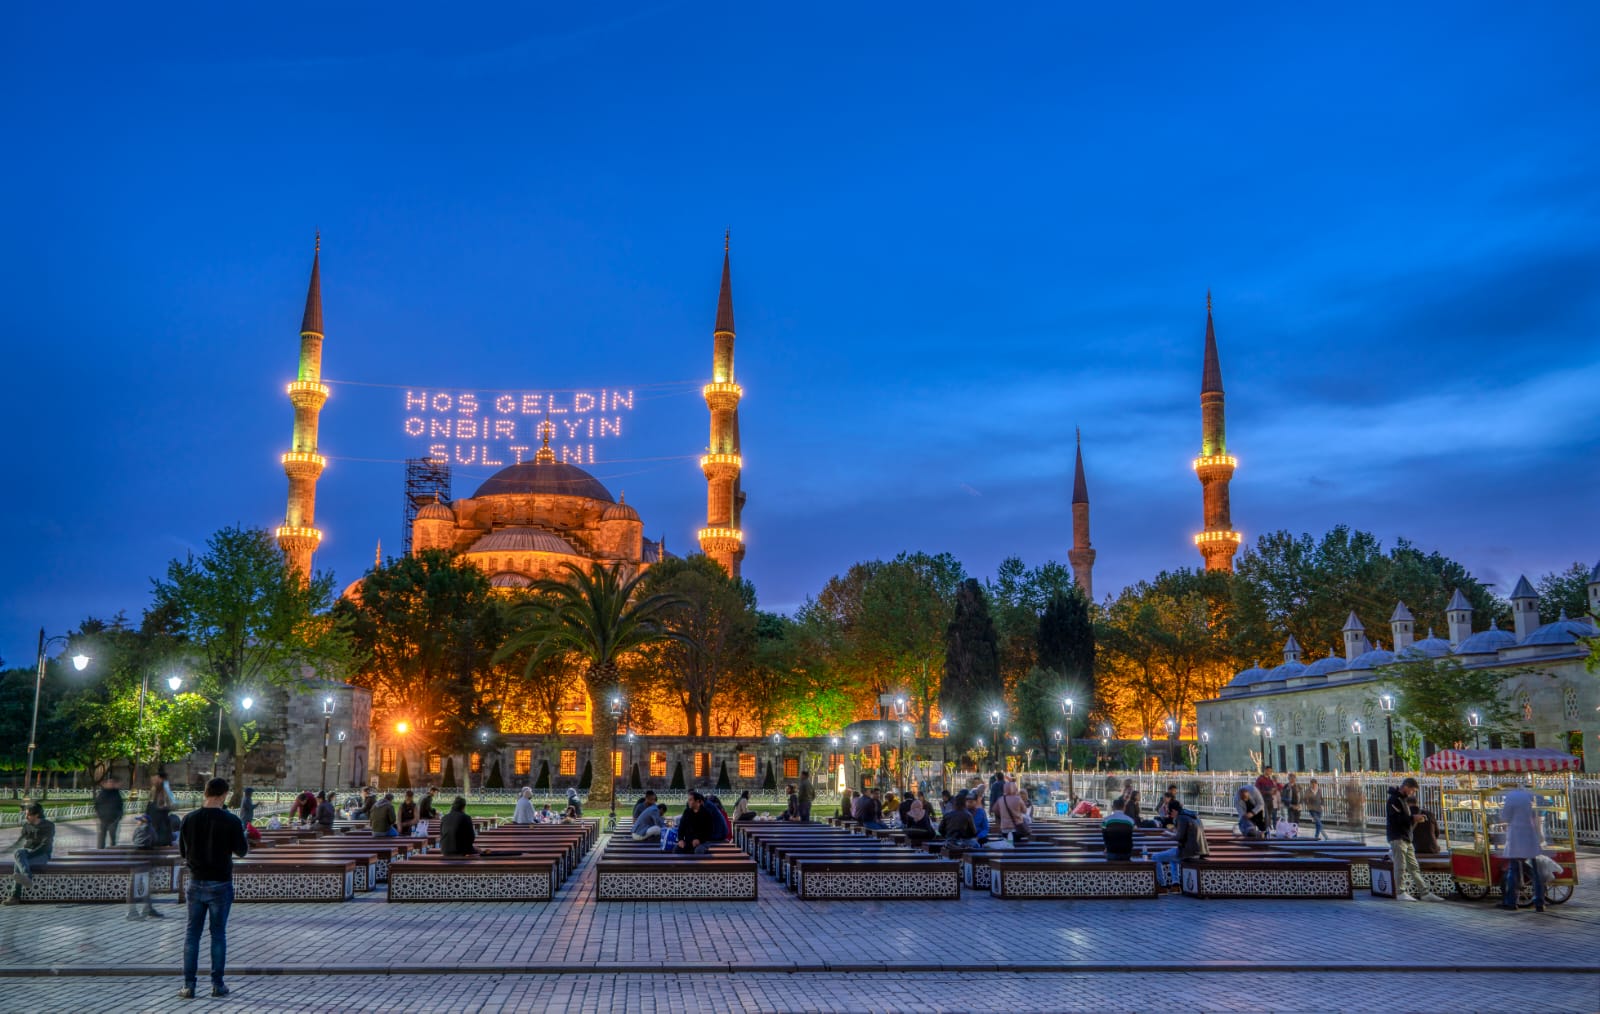 سلطان الأشهر رمضان في تركيا أجواء عائلية وعادات وتقاليد مميزة